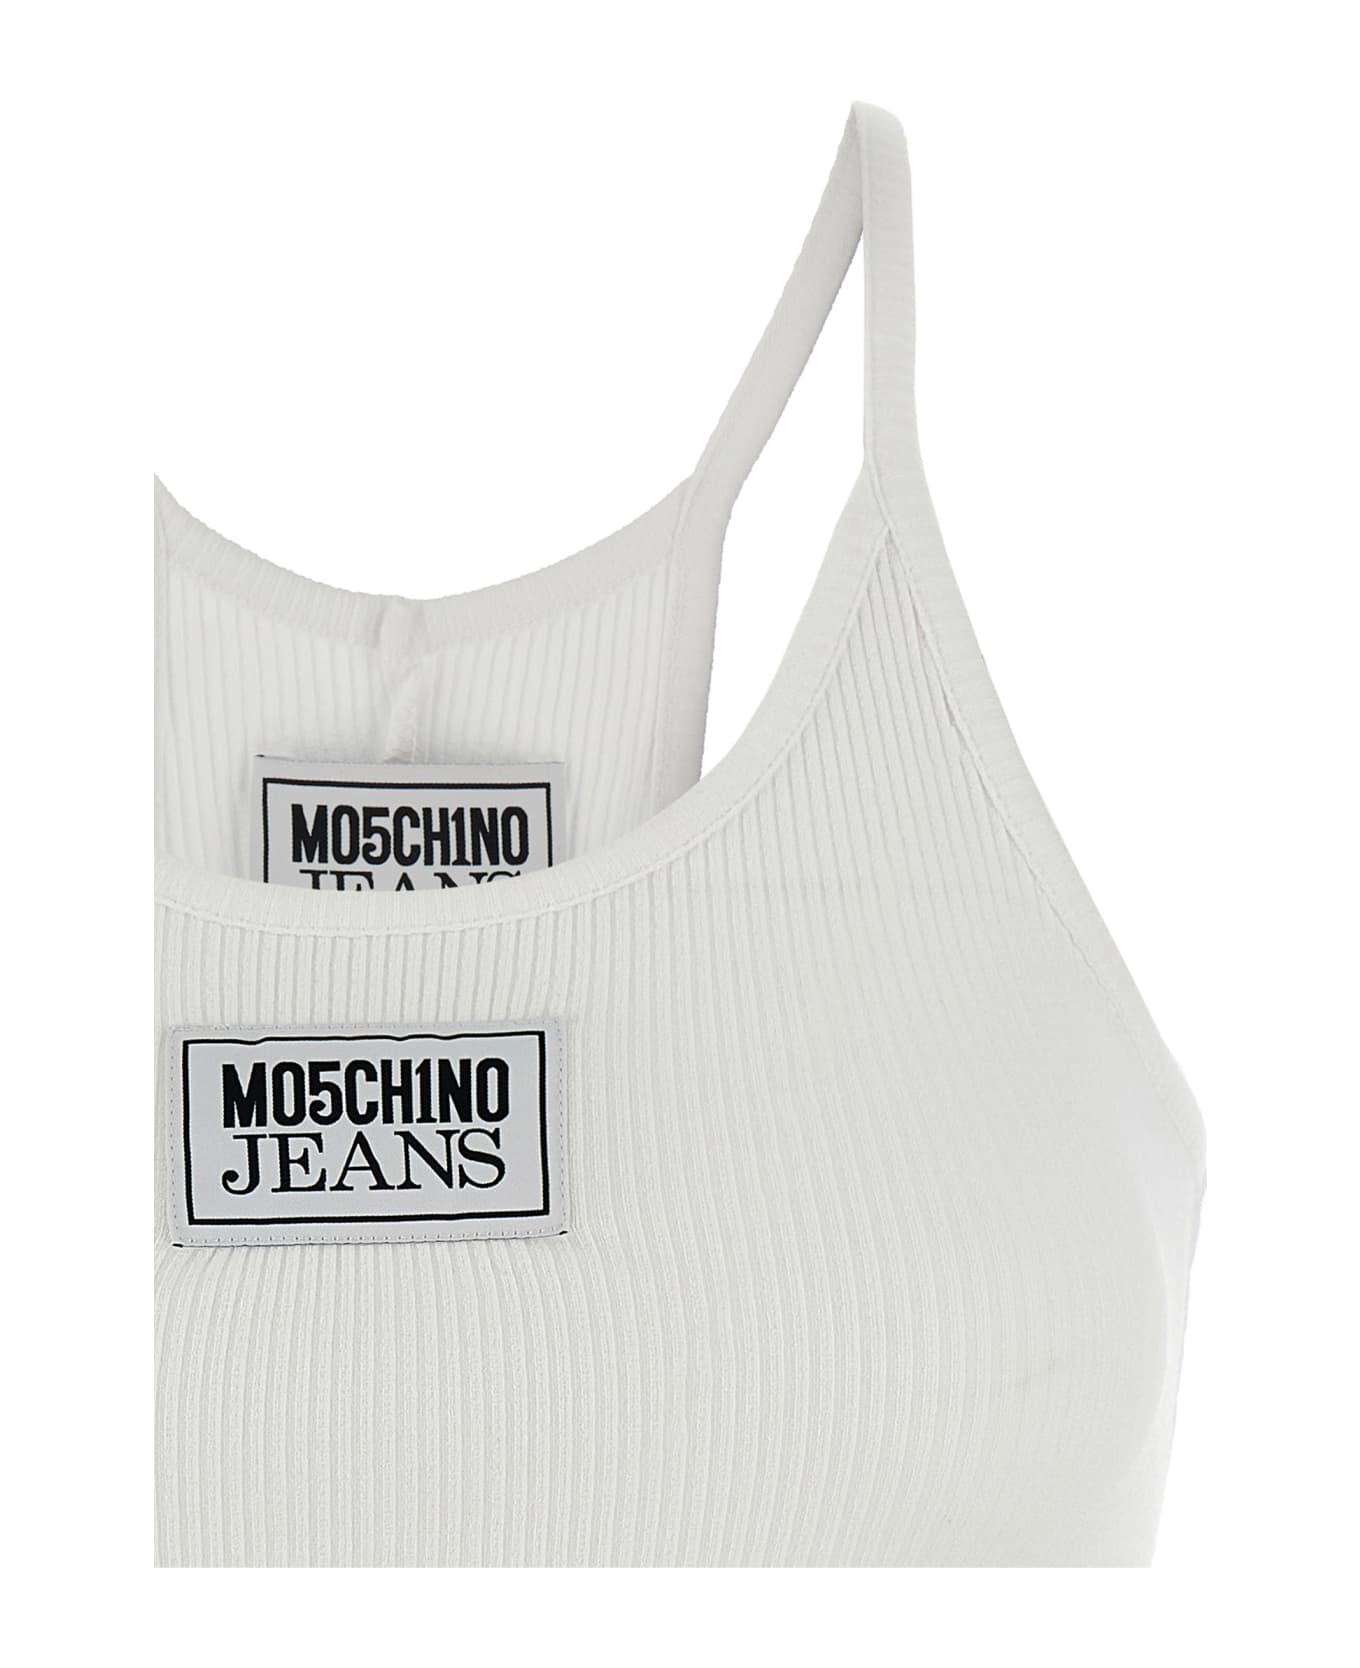 M05CH1N0 Jeans Tank Top Logo Label - White